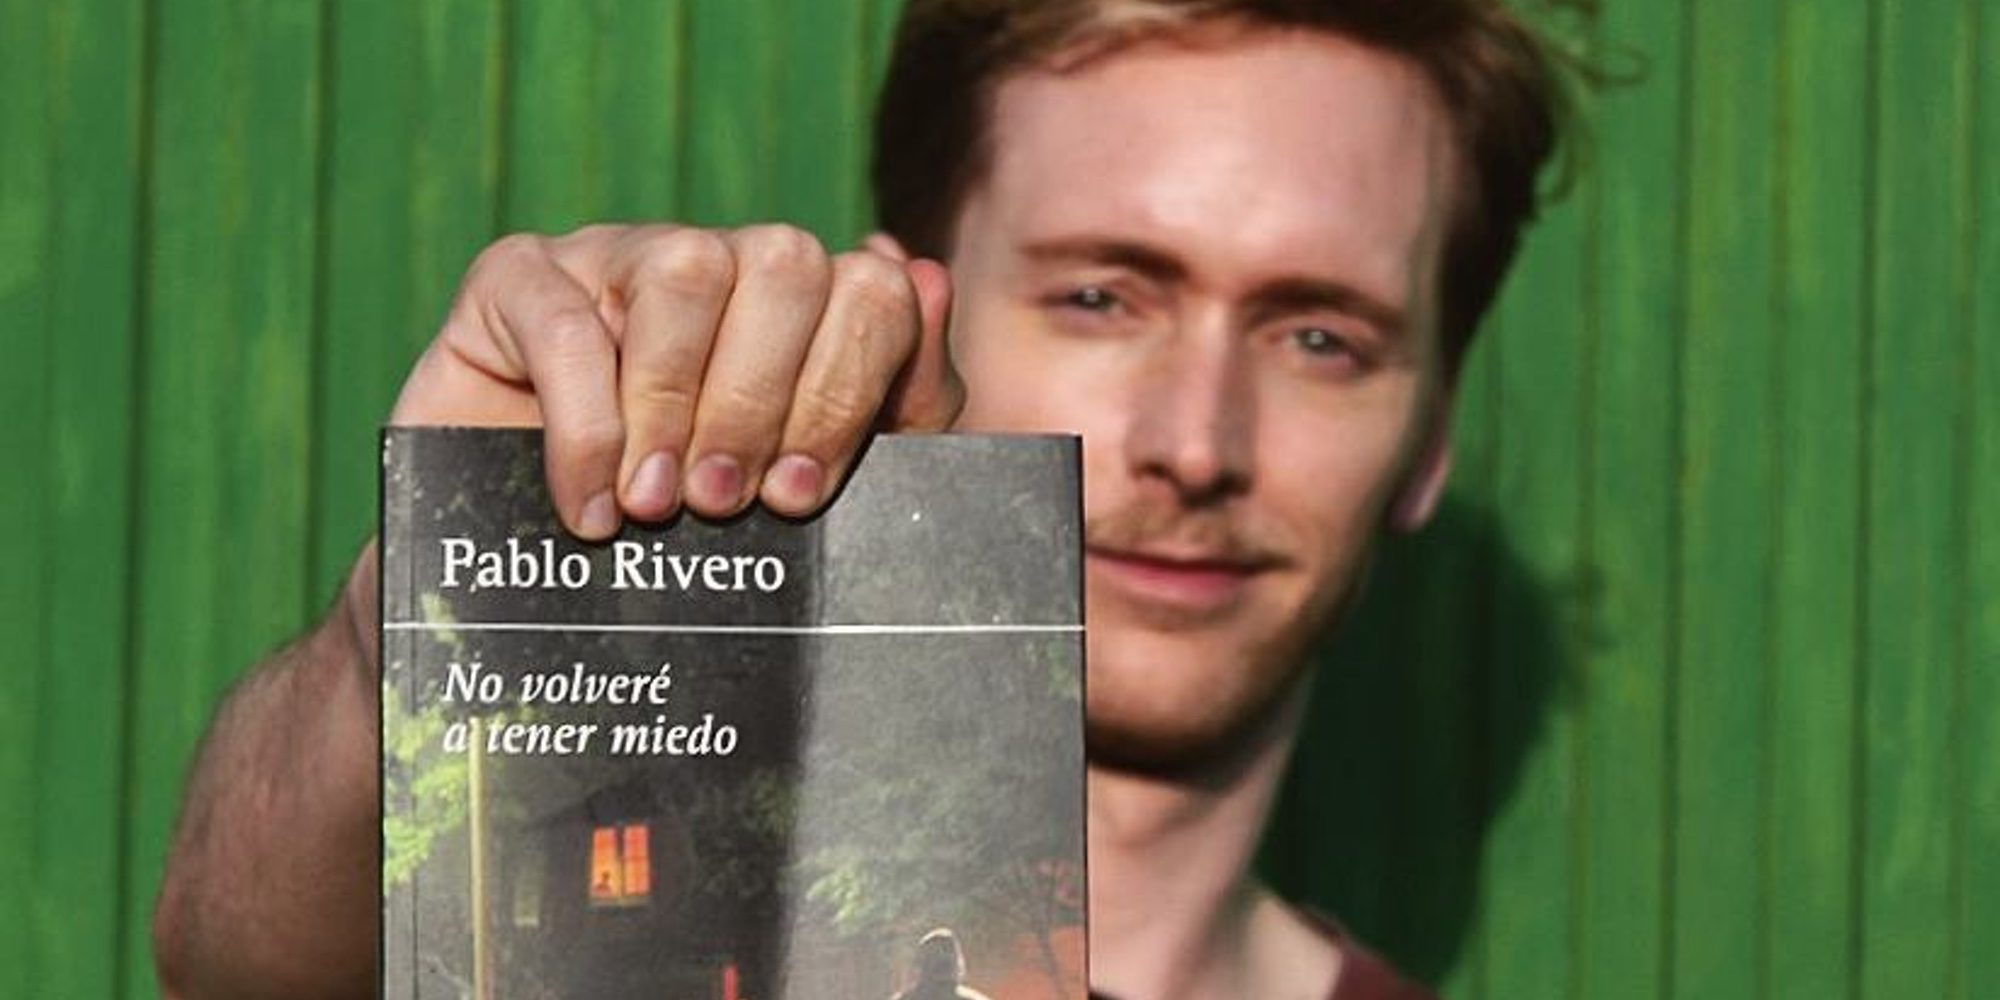 Pablo Rivero sobre su novela 'No volveré a tener miedo': "Los que tenemos mucho miedo, somos buenos metiéndolo"